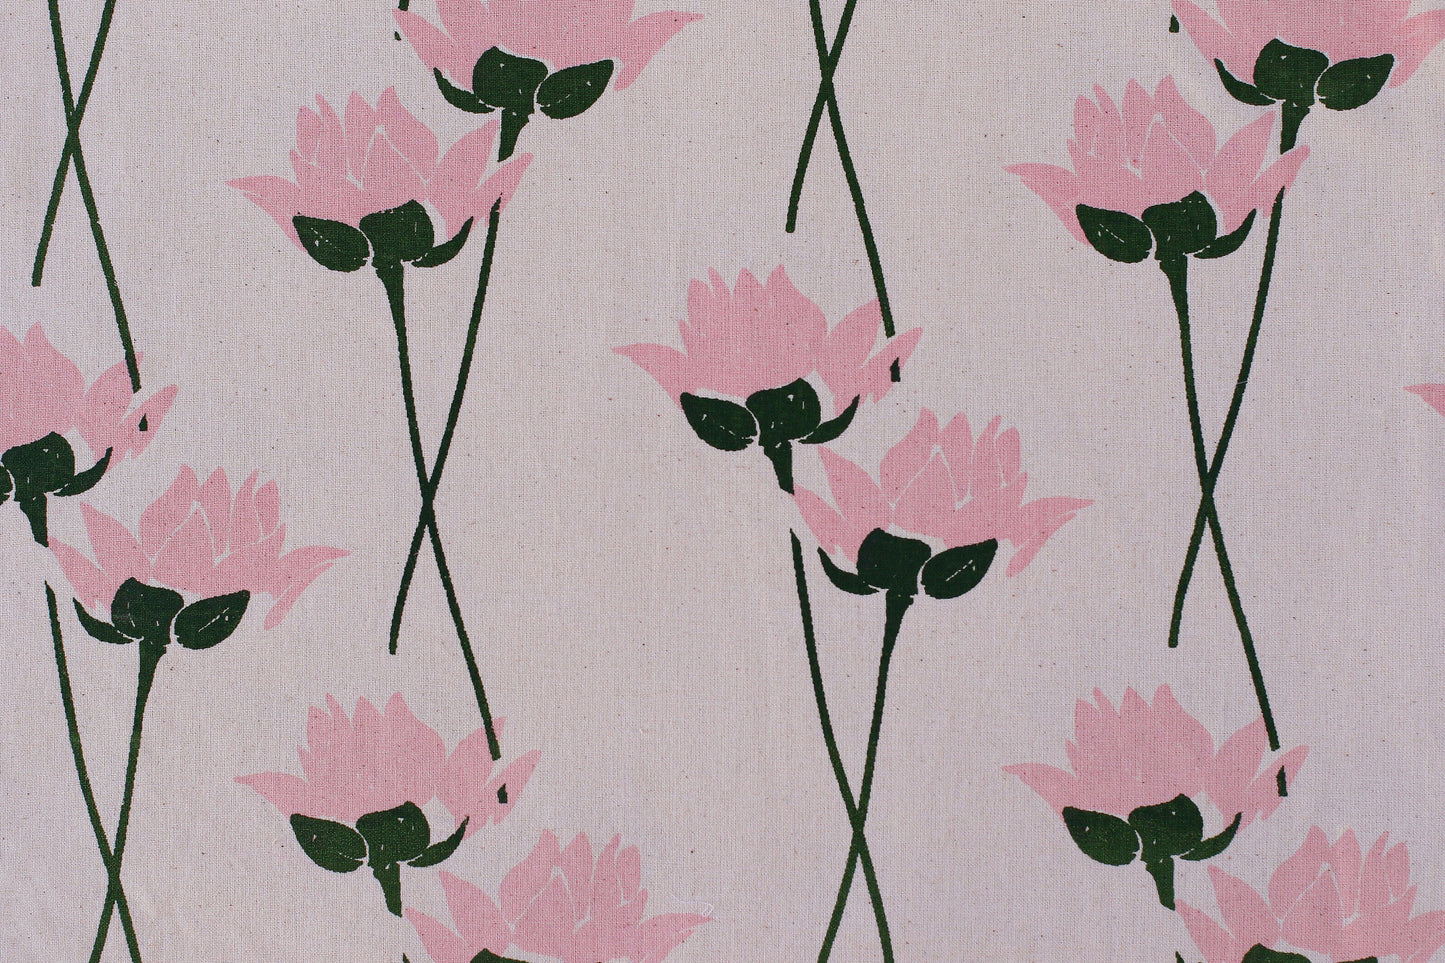 Lotus Flower Textile - Pink - Organic White